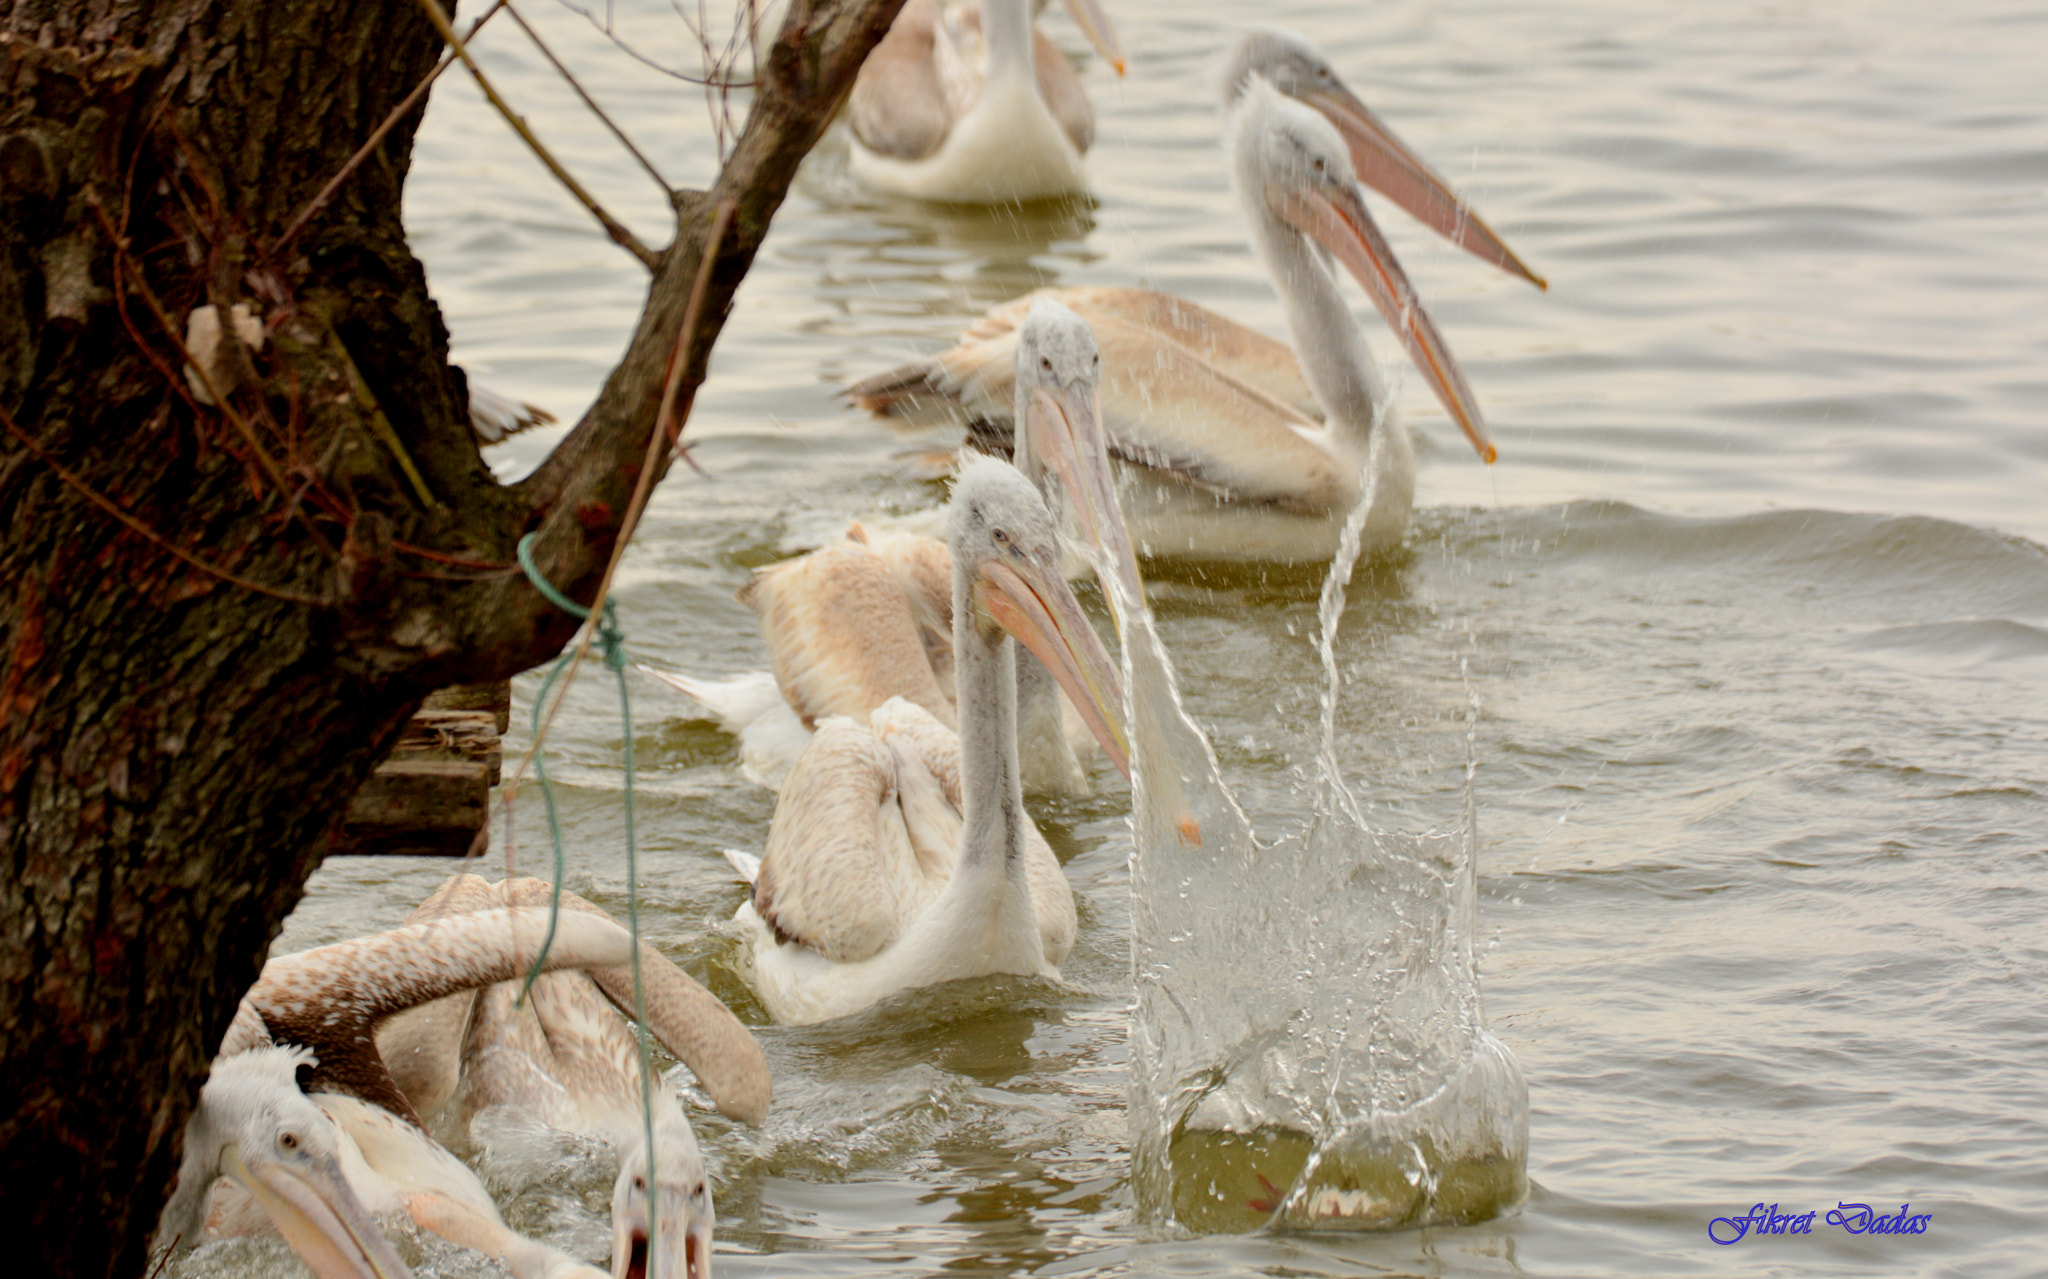 Nikon D7100 sample photo. Balıkçının beslediği pelikanlar photography